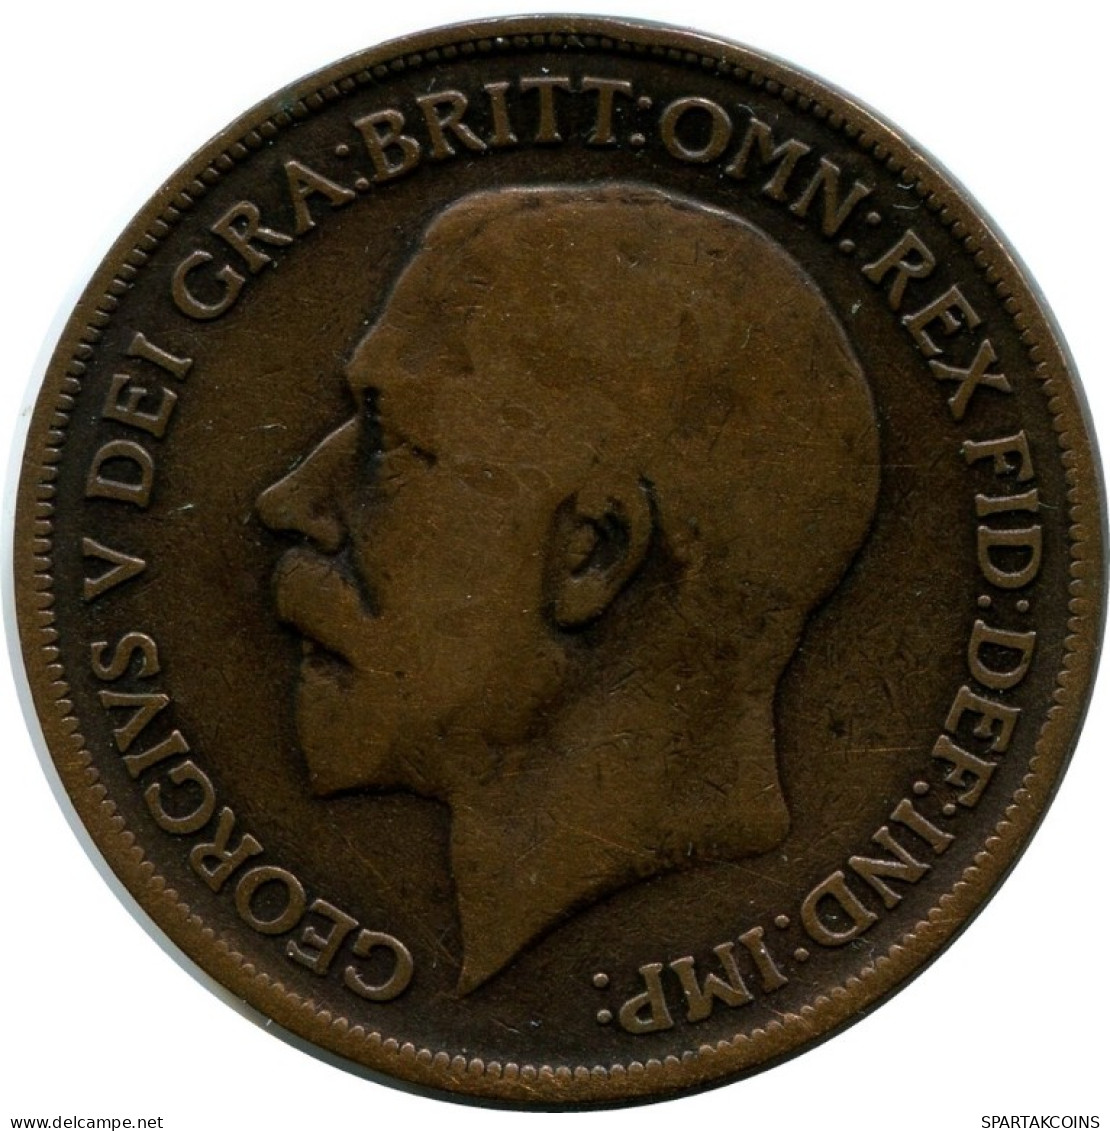 PENNY 1916 UK GROßBRITANNIEN GREAT BRITAIN Münze #AN493.D.A - D. 1 Penny